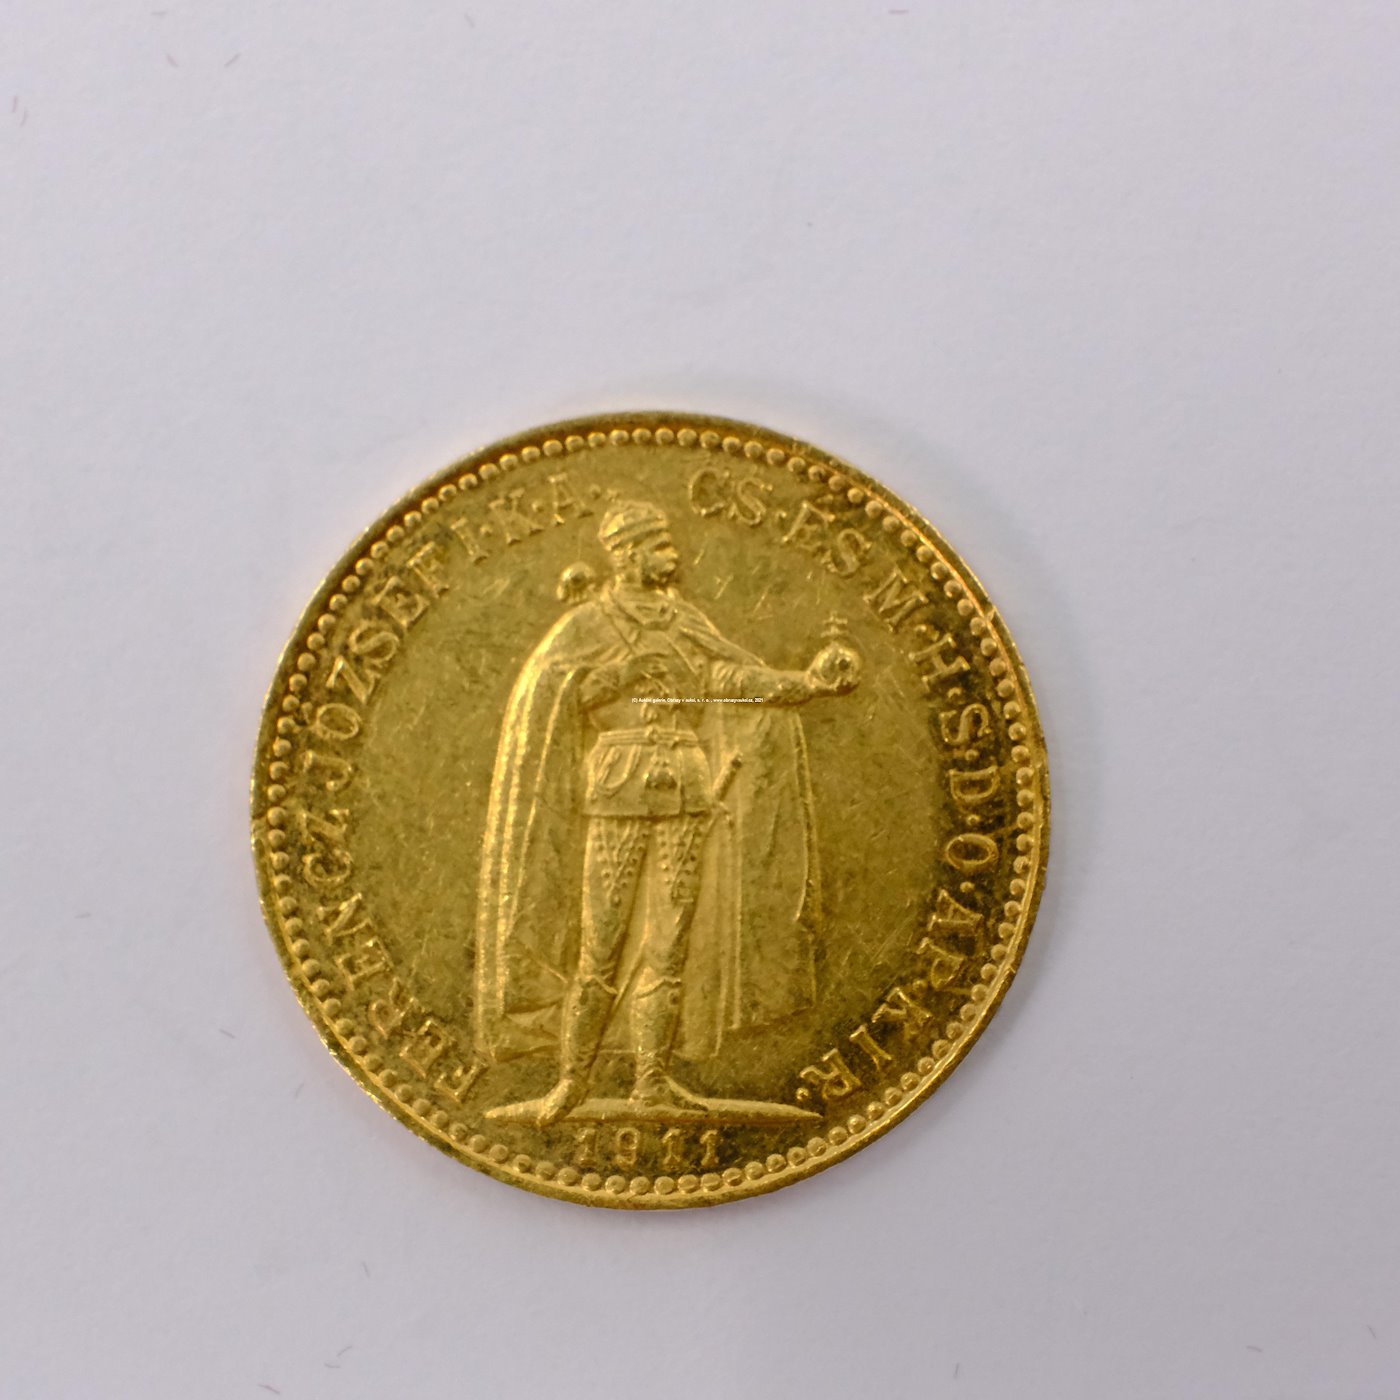 .. - Rakousko Uhersko zlatá 10 Koruna 1911 K.B. uherská. Zlato 900/1000, hrubá hmotnost mince 3,387g